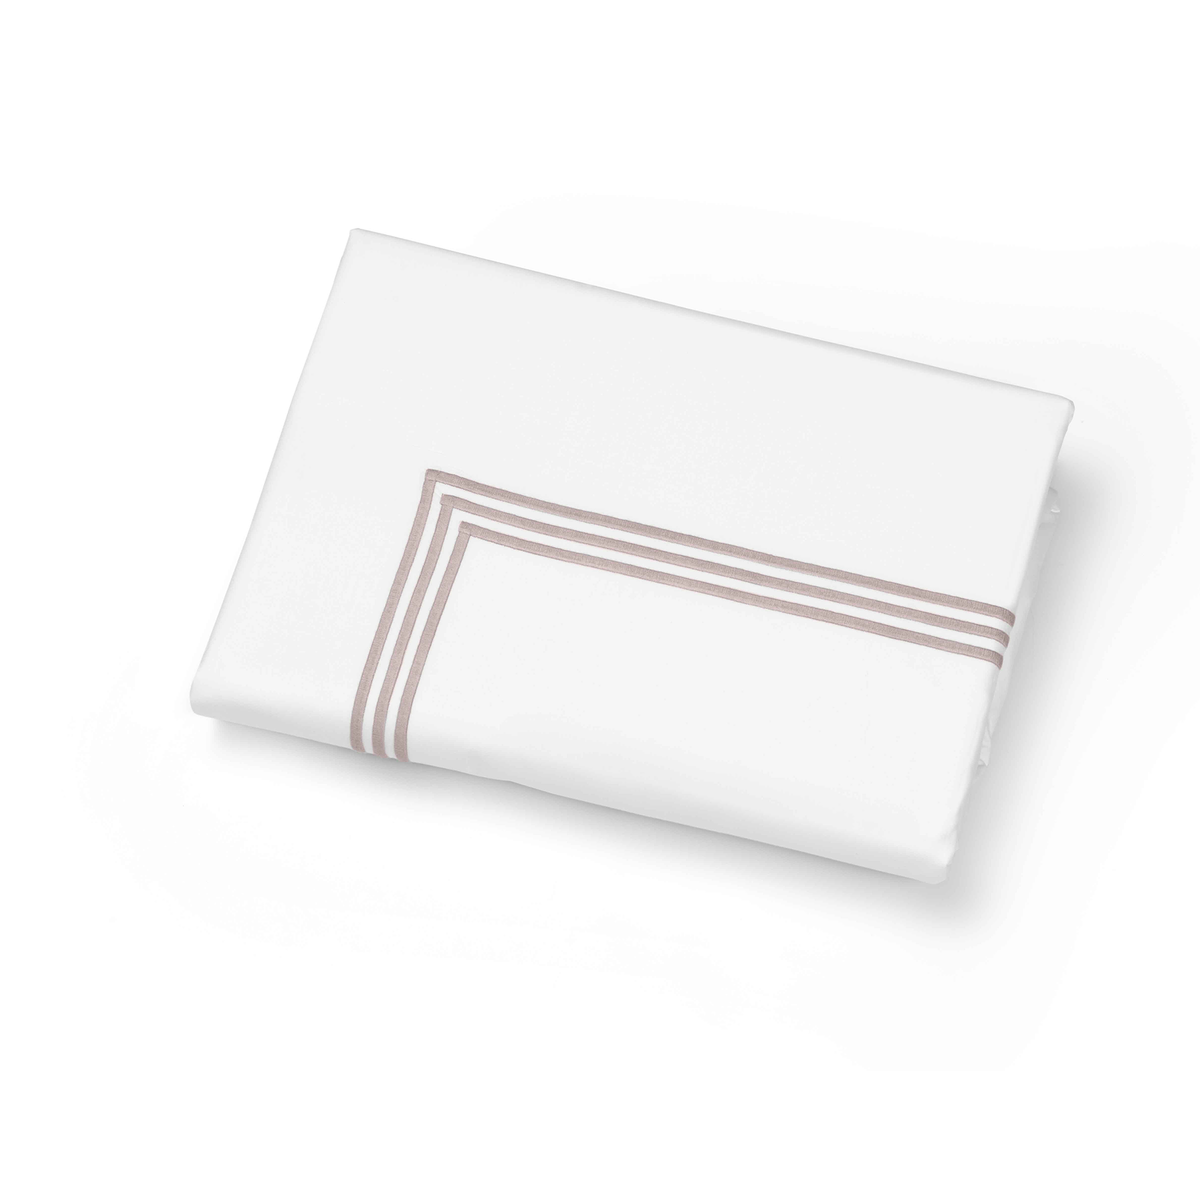 Folded Duvet Cover of Signoria Platinum Percale Bedding in White/Antique Rose Color